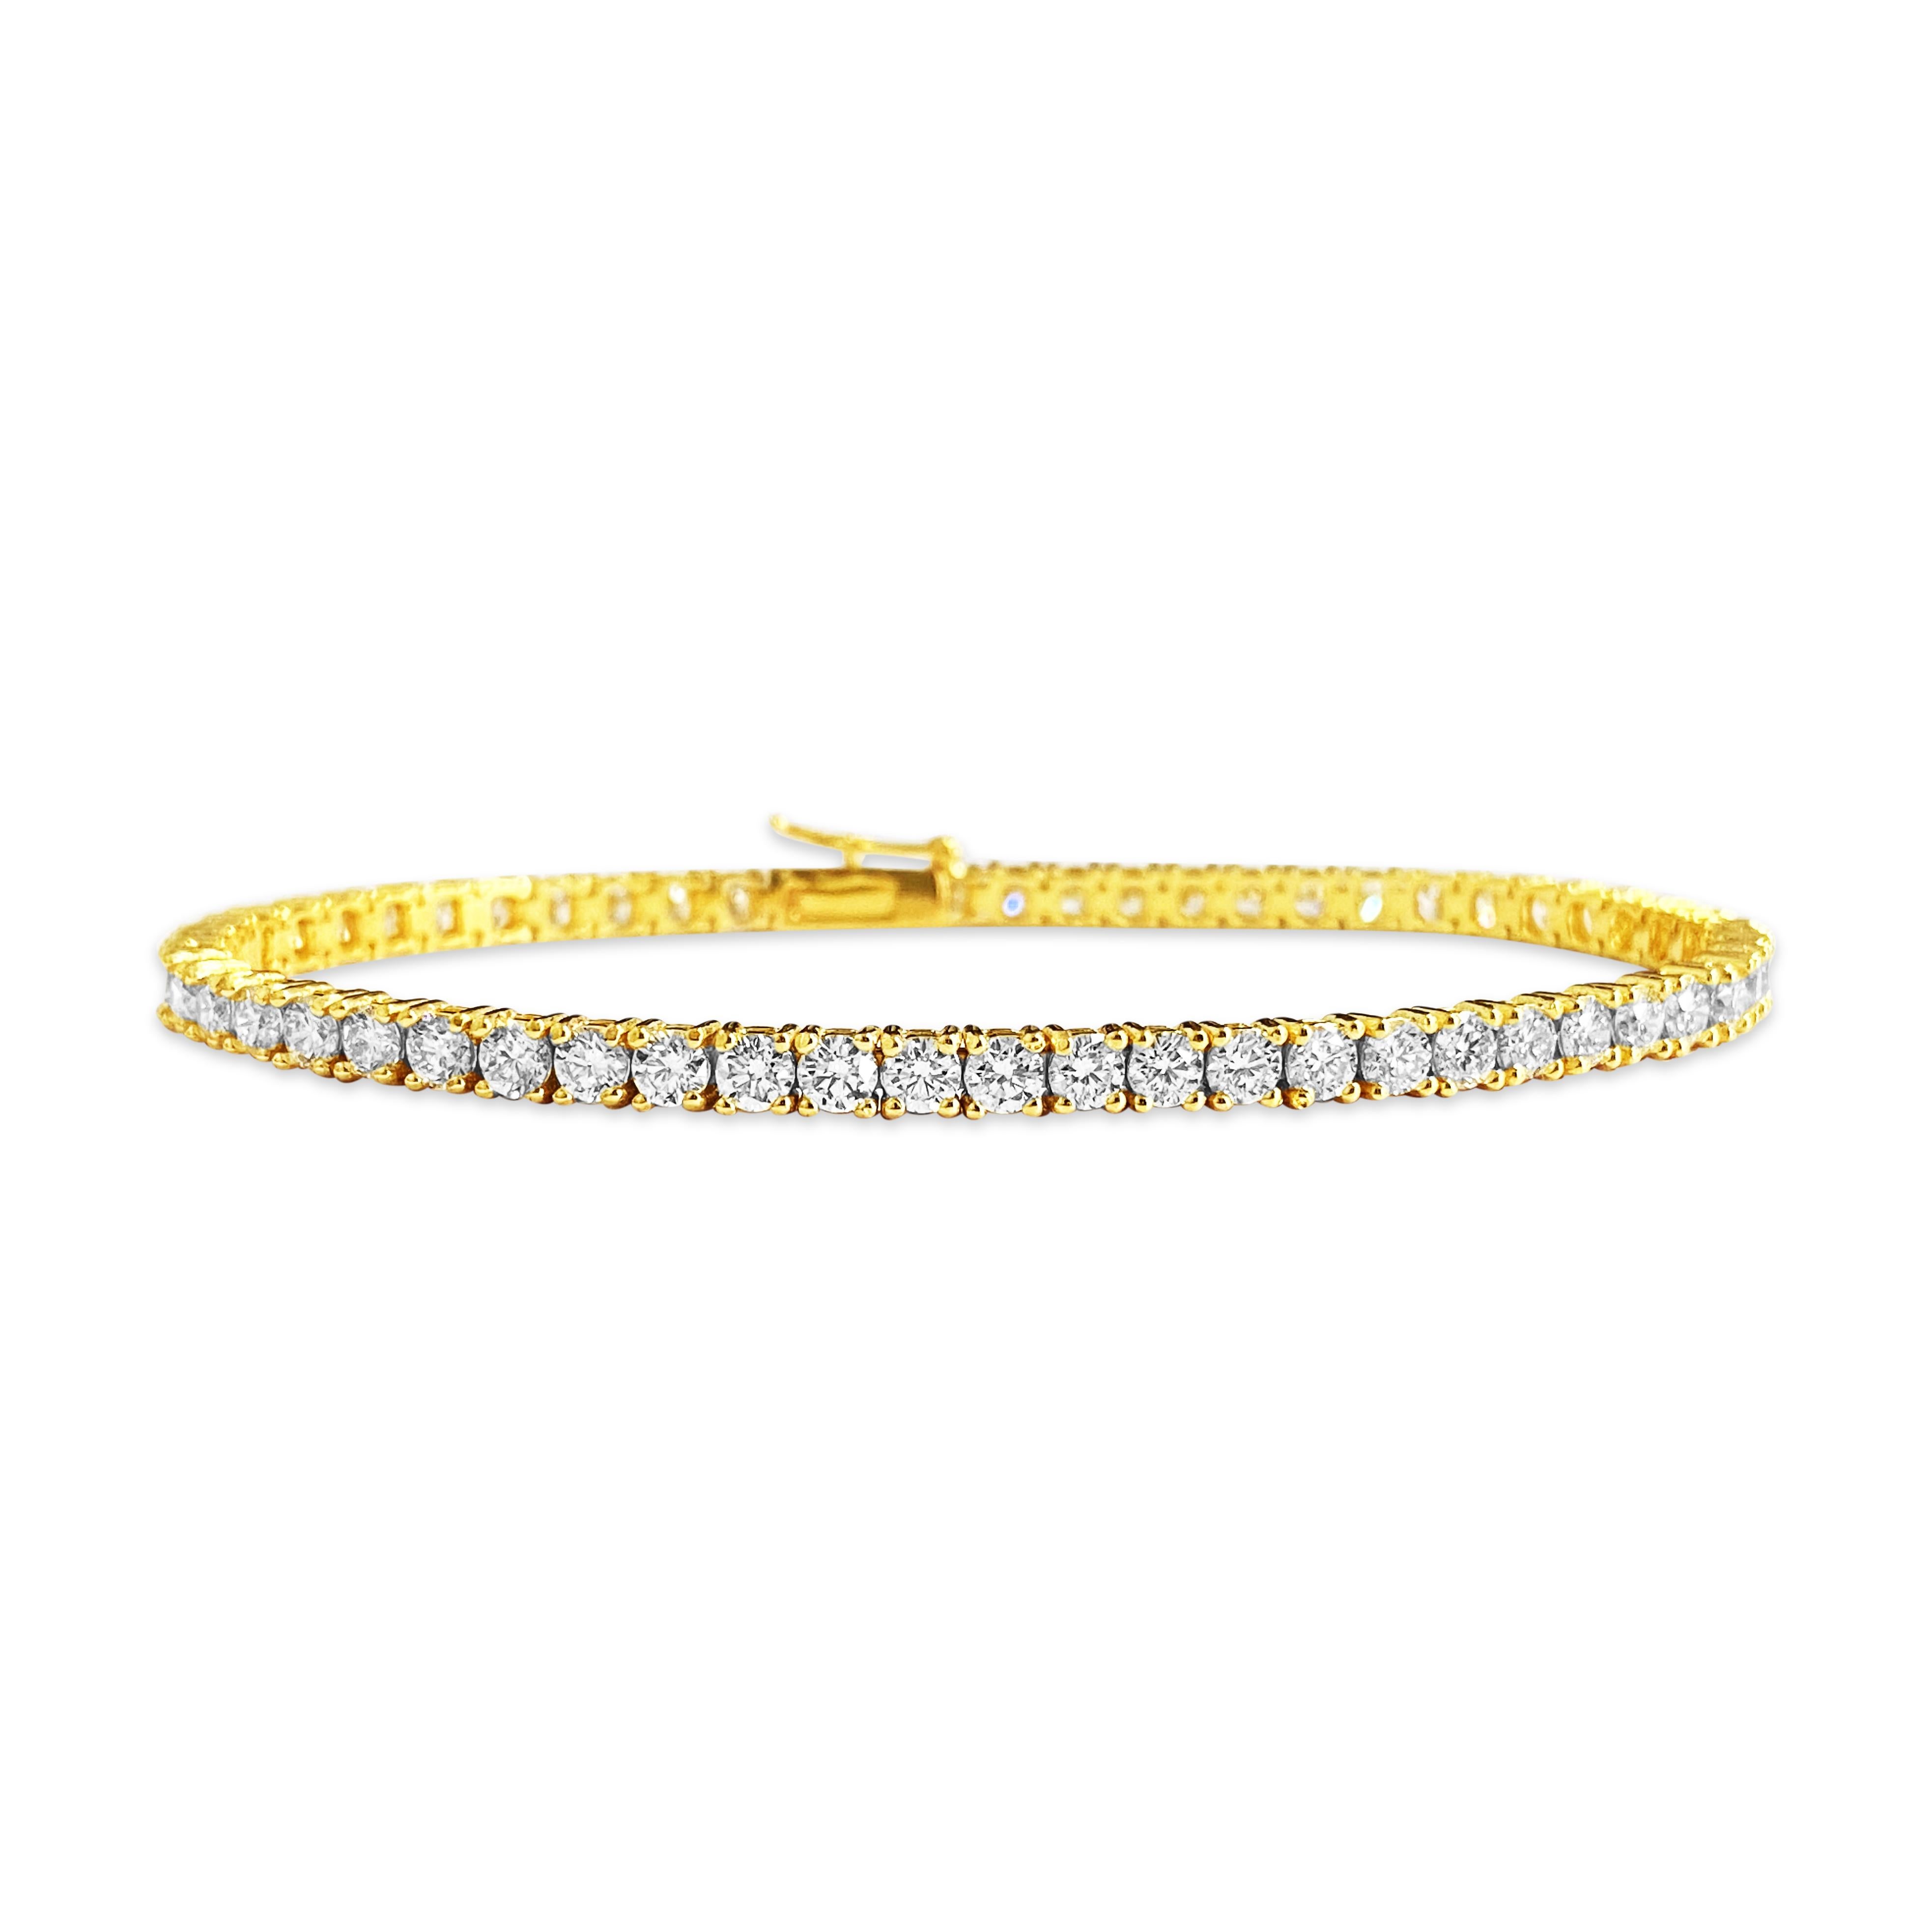 Wir stellen ein brandneues Unisex-Diamant-Tennisarmband vor, das mit Präzision aus 14 Karat Gelbgold gefertigt wurde und insgesamt 5,60 Karat runde Diamanten im Brillantschliff aufweist. Mit VVS-Klarheit und H-Farbe strahlt jeder der 57 Steine